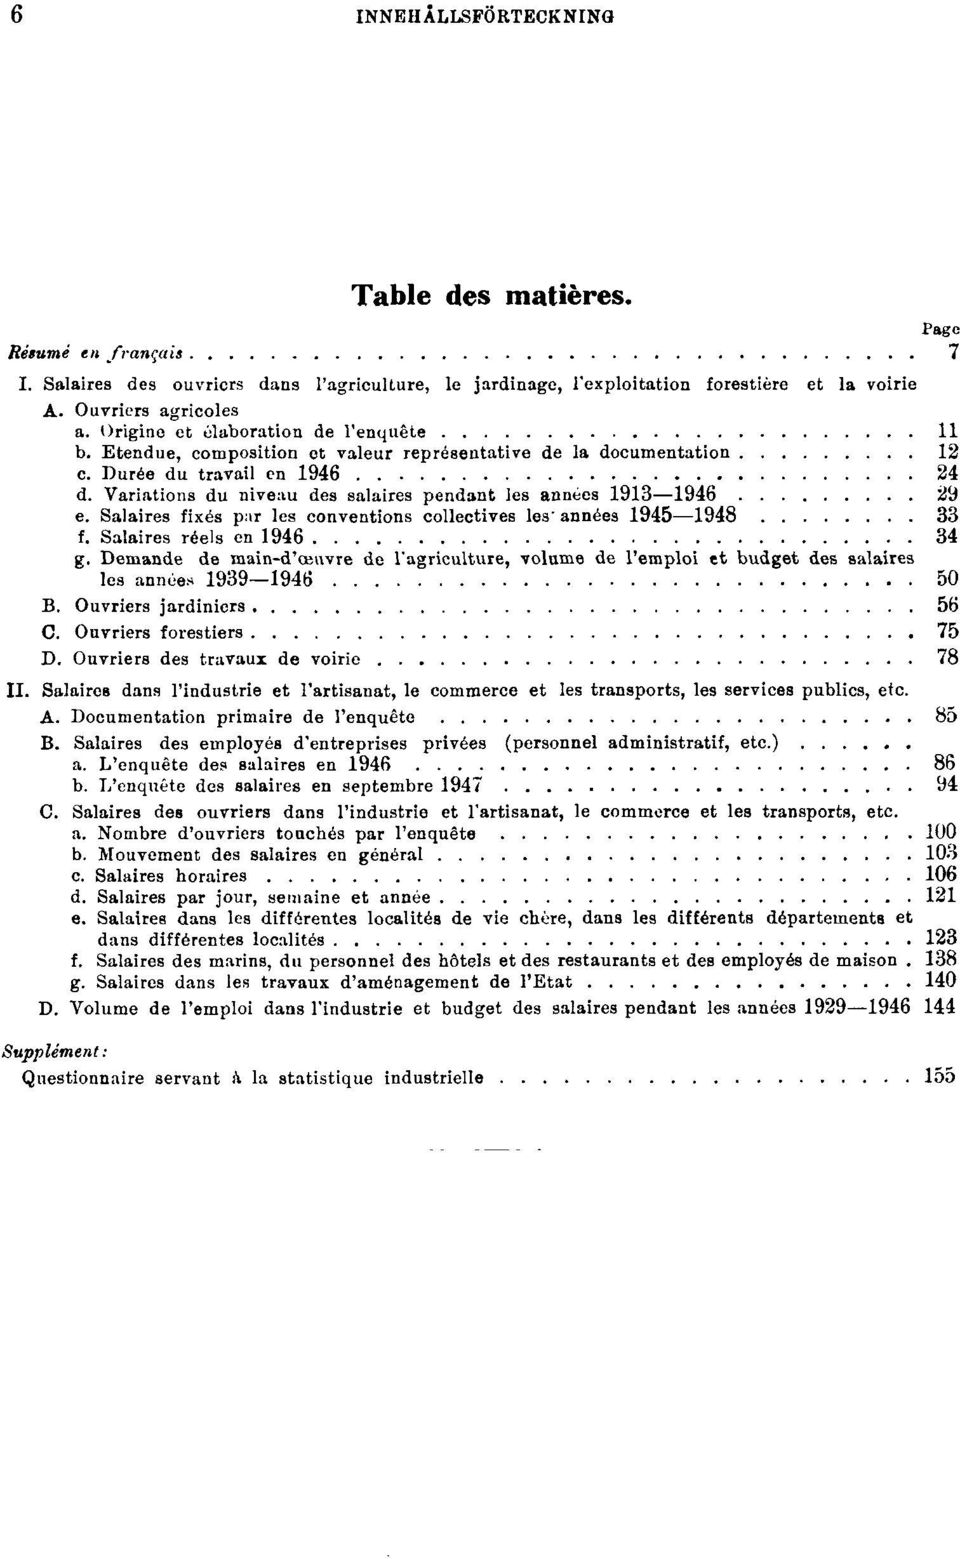 Variations du niveau des salaires pendant les années 1913 1946 29 e. Salaires fixés par les conventions collectives les années 1945 1948 33 f. Salaires réels en 1946 34 g.